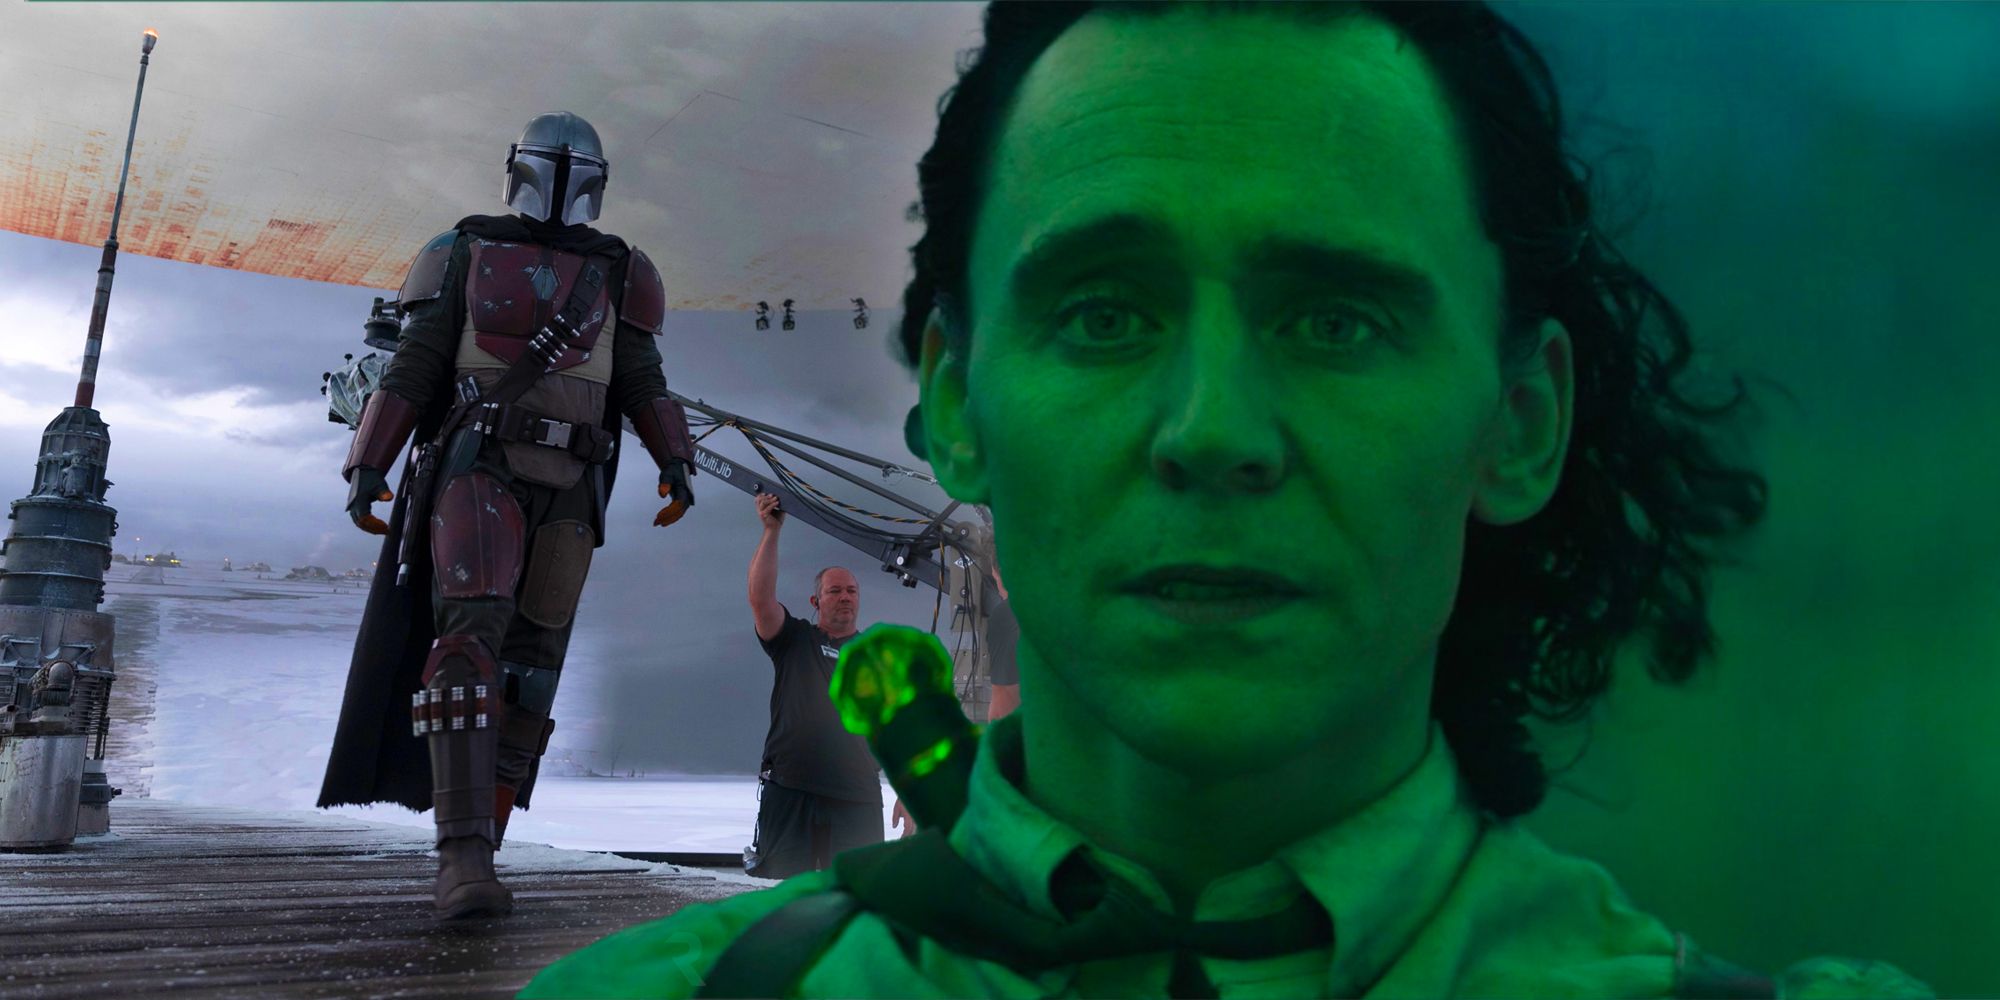 Loki the Mandalorian